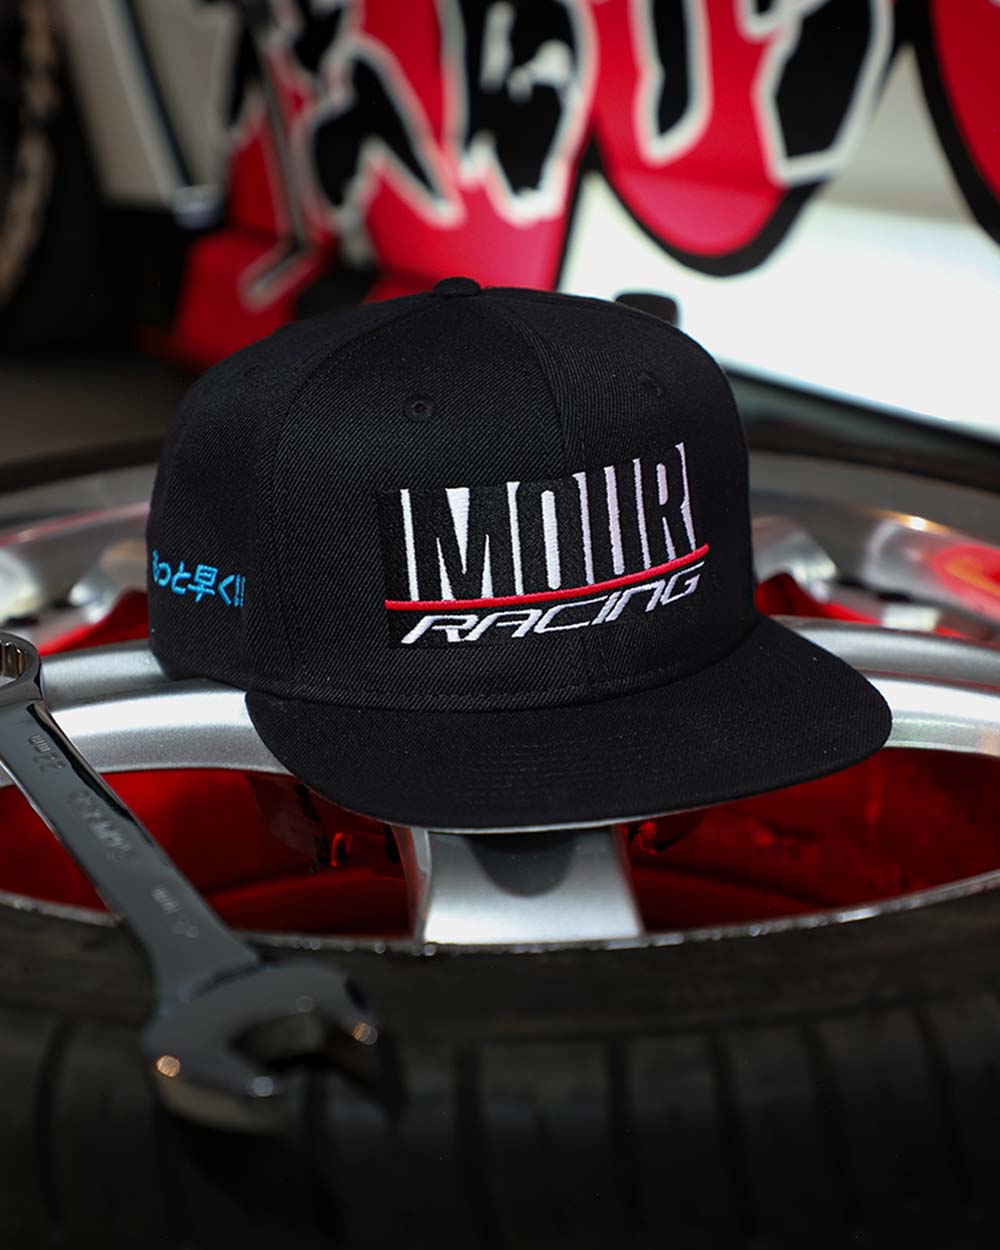 Imouri Racing Snapback Hat